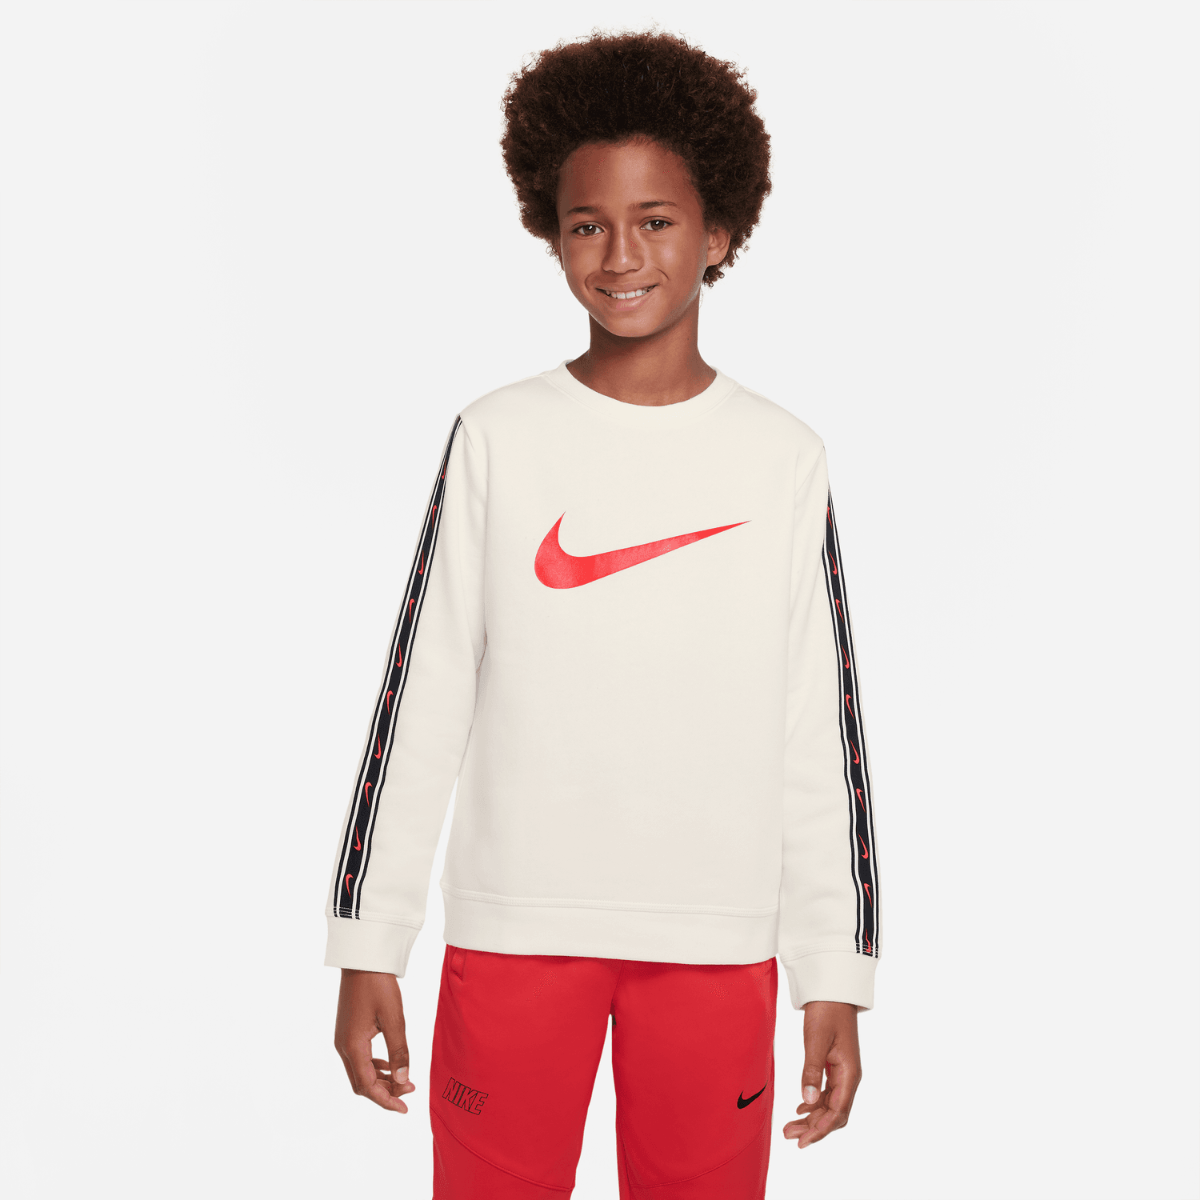 Sweat Nike Repeat Junior - Beige/Noir/Rouge